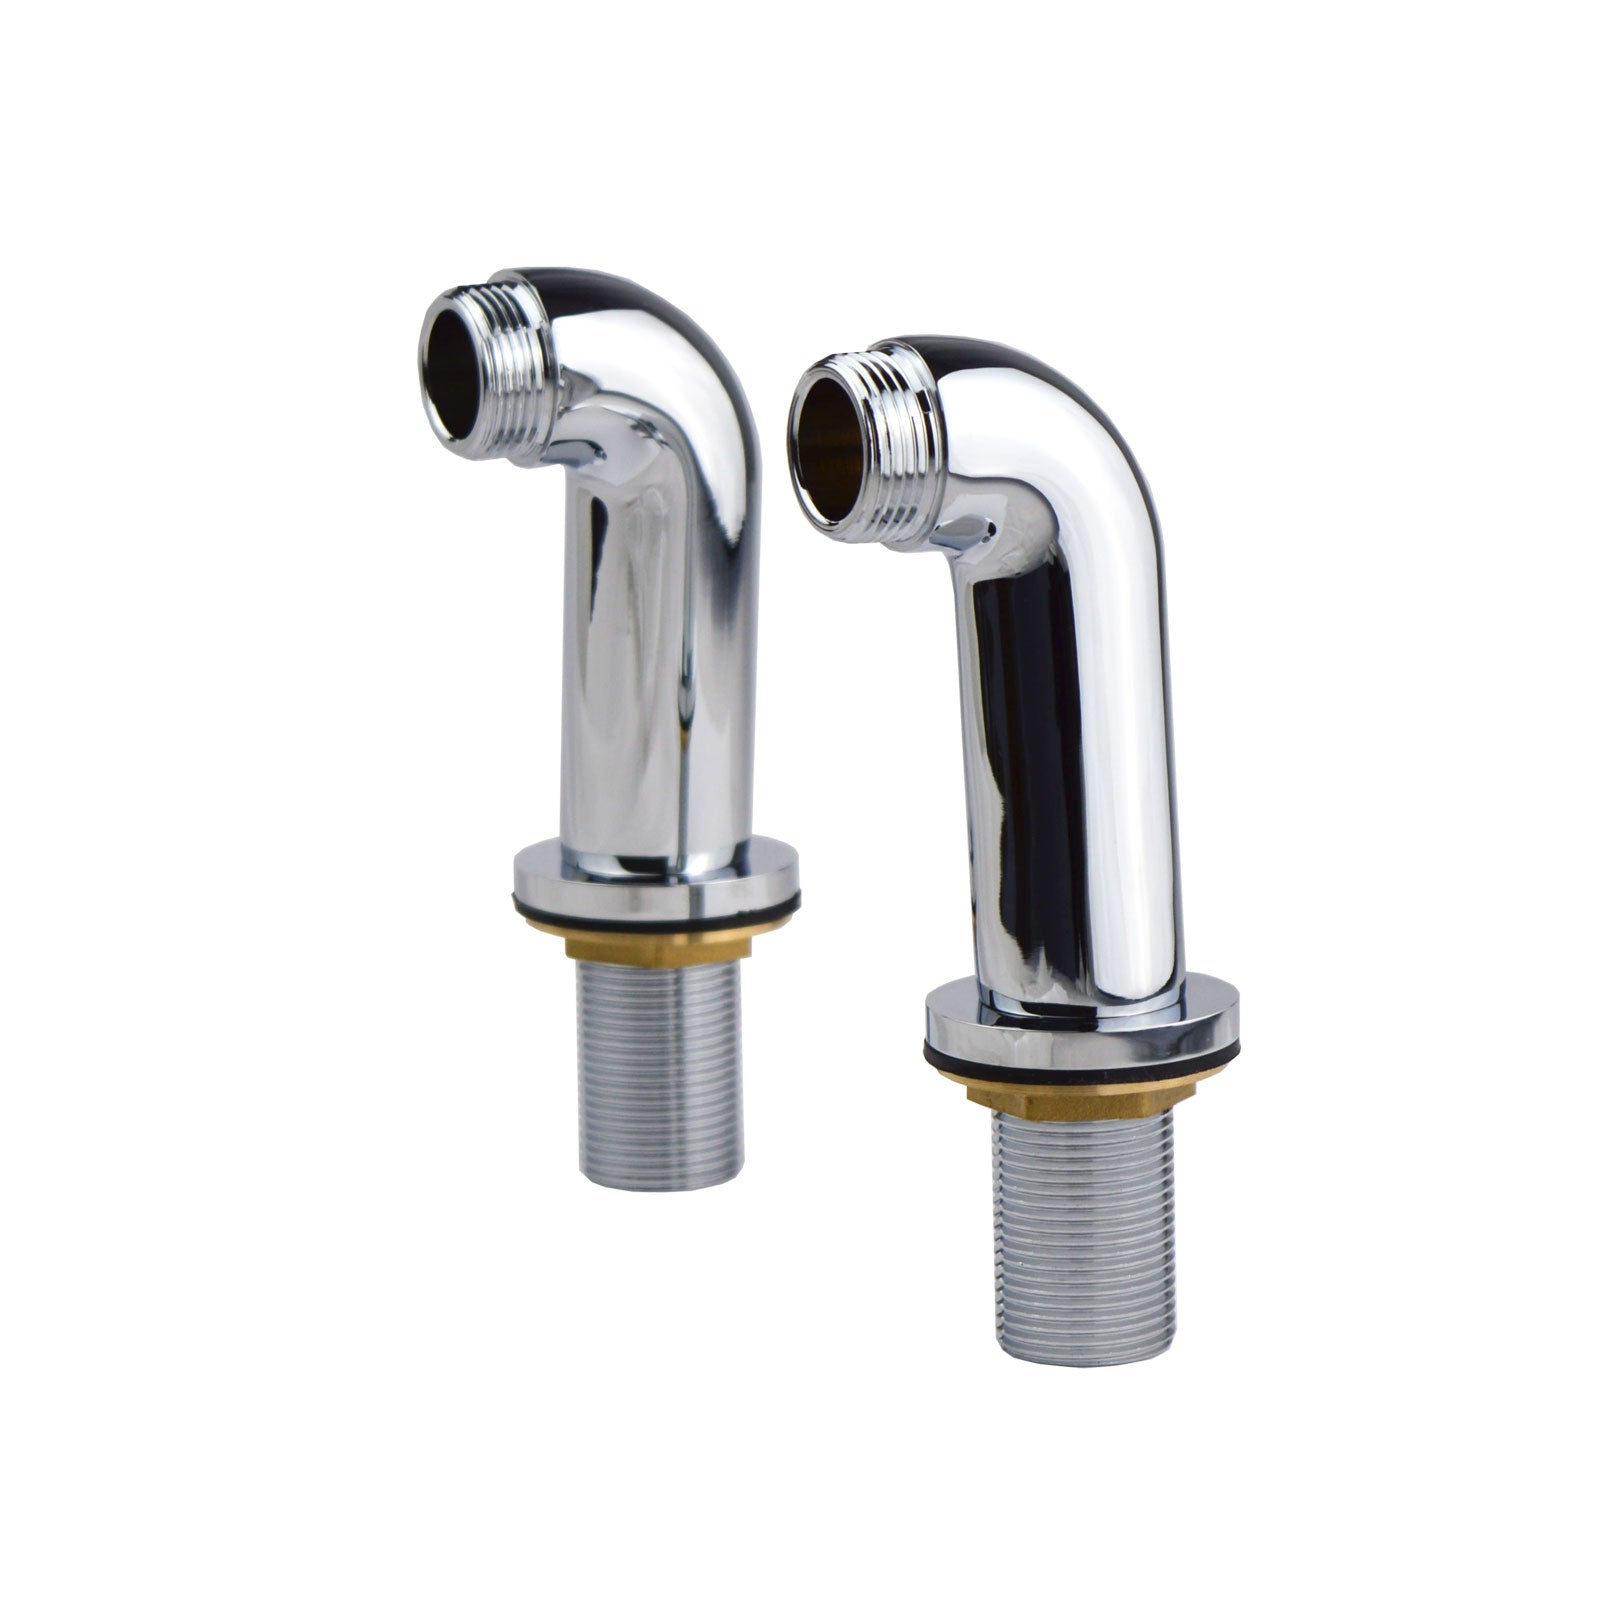 Bathroom Bath Shower Mixer Tap Legs Adapter Pillars Extension